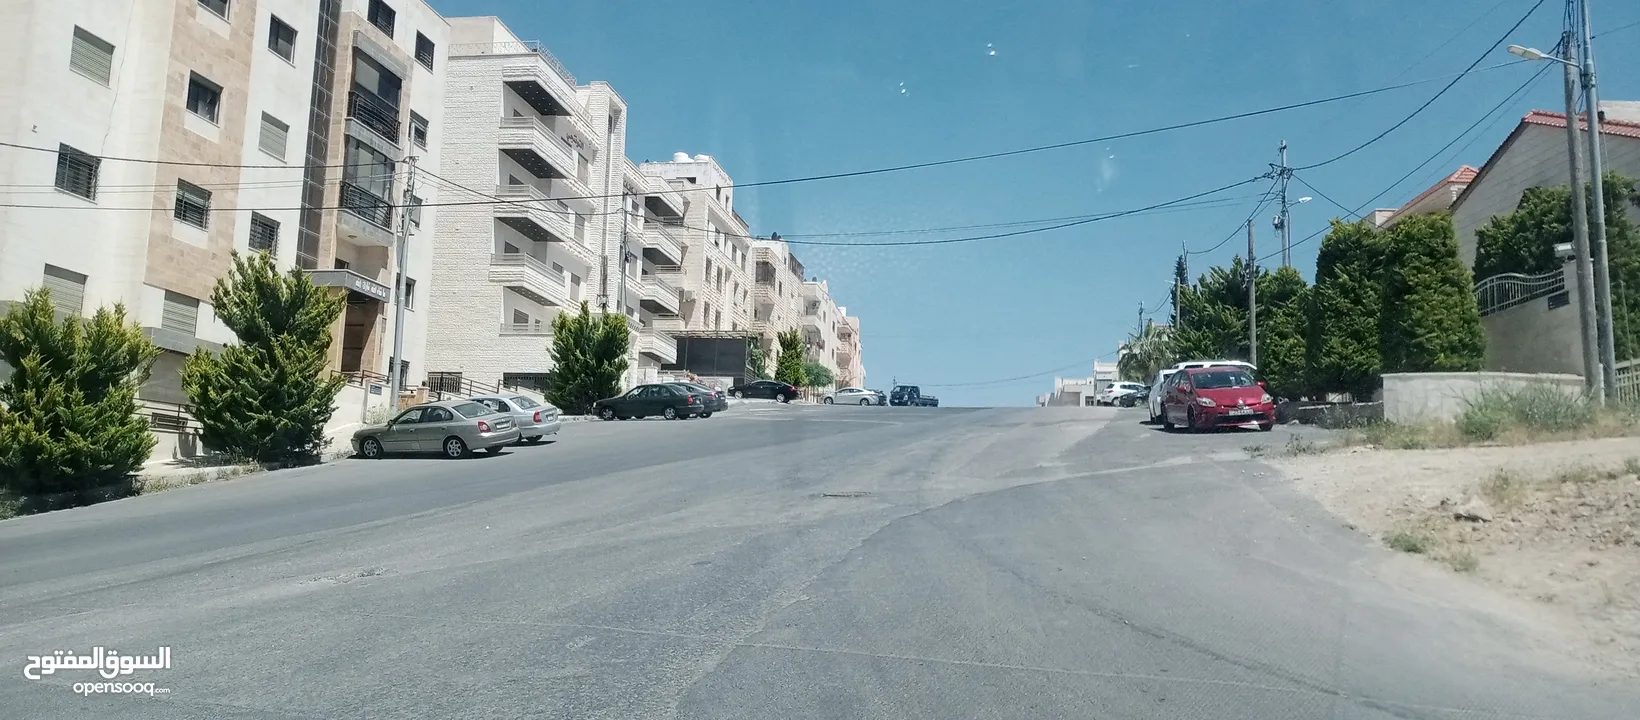 أرض للبيع في أبو نصير قرب الأكاديمية البحرية